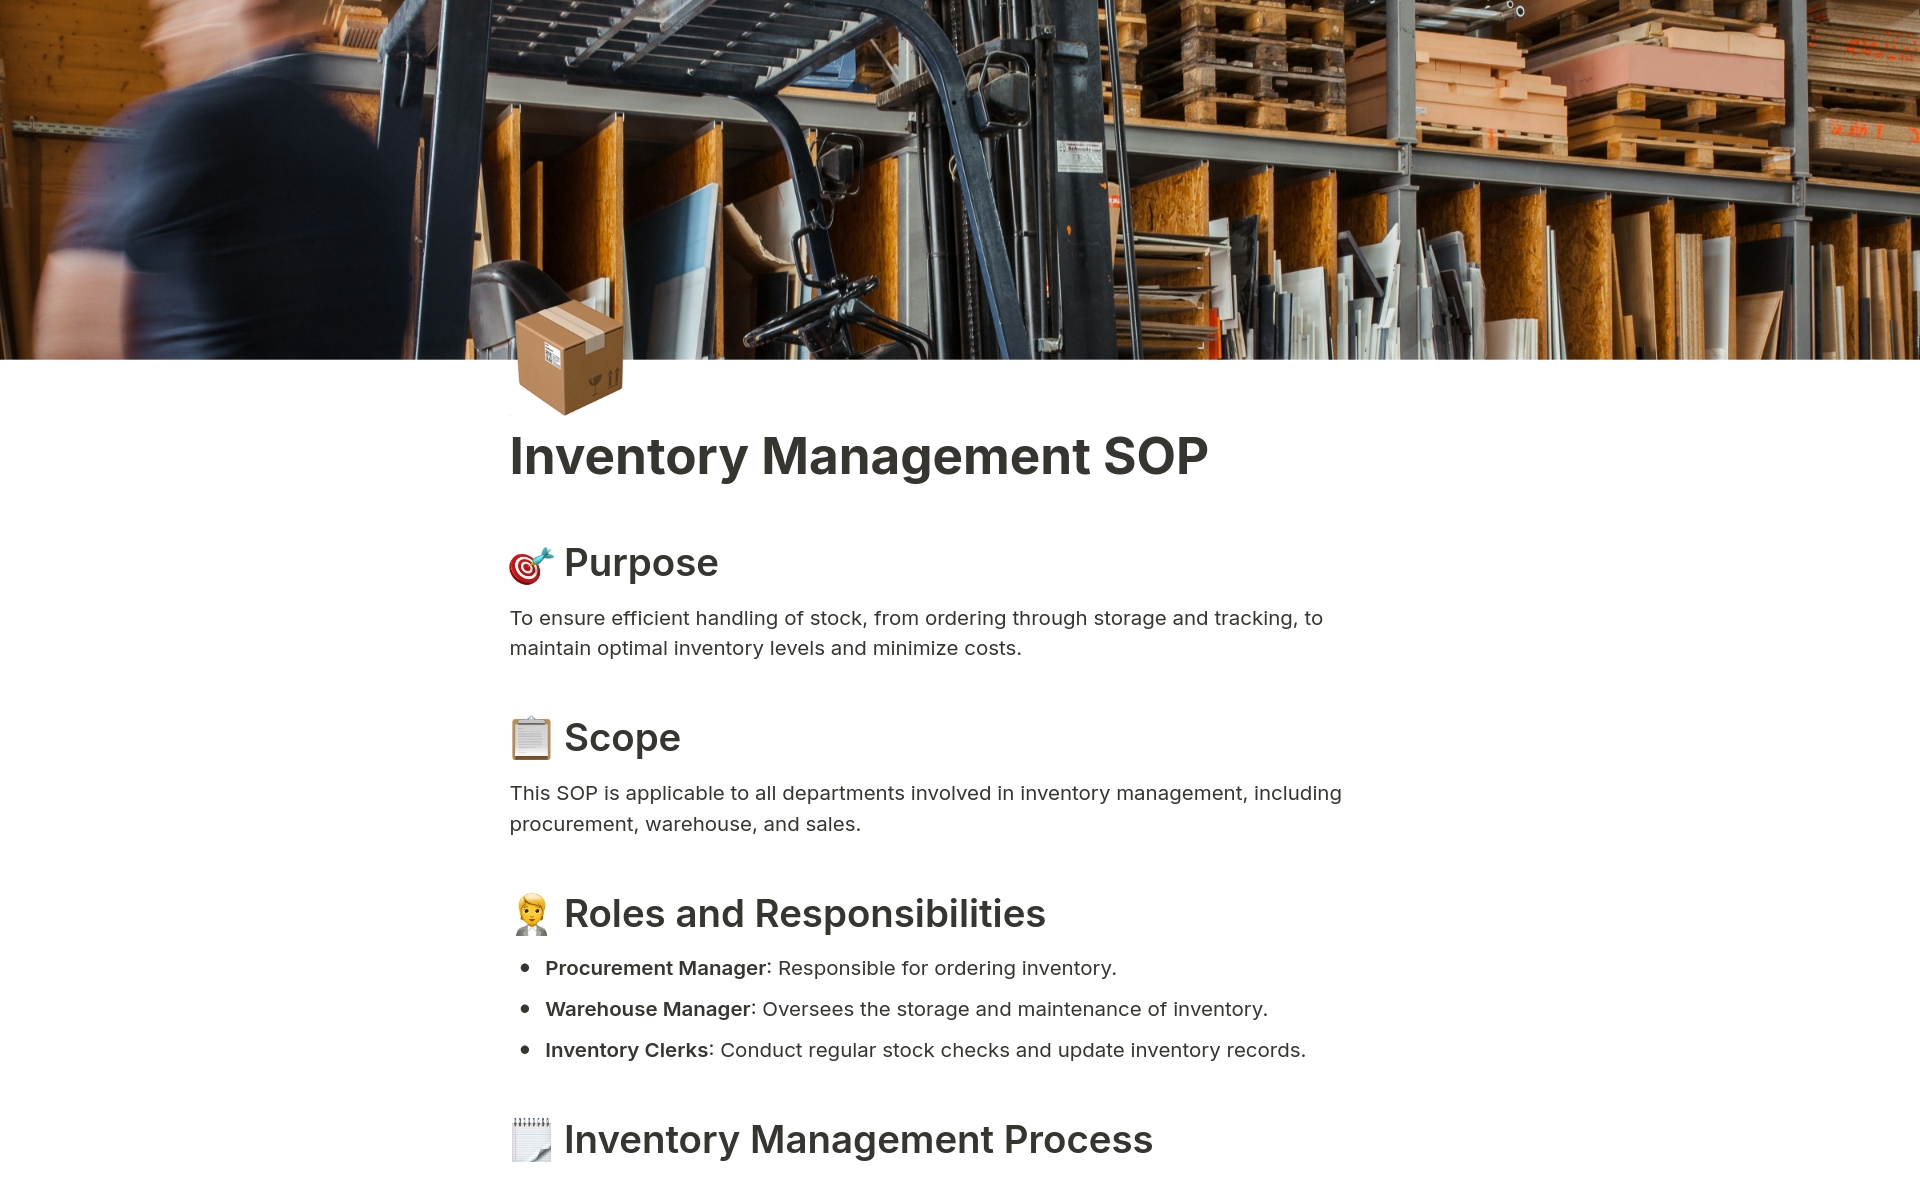 Vista previa de una plantilla para Inventory Management SOP